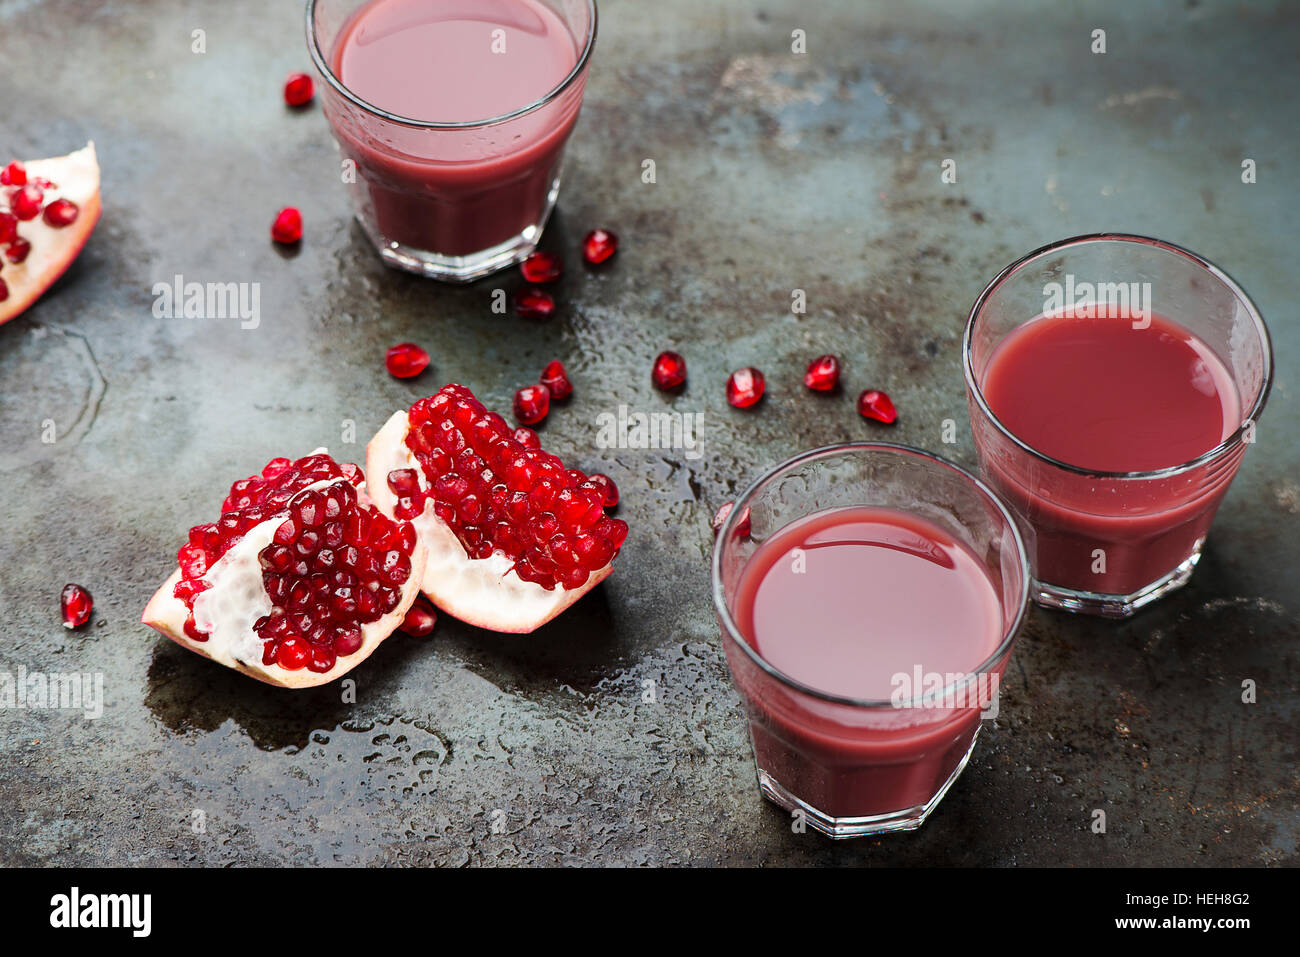 Ripe pomegranates with juice Stock Photo